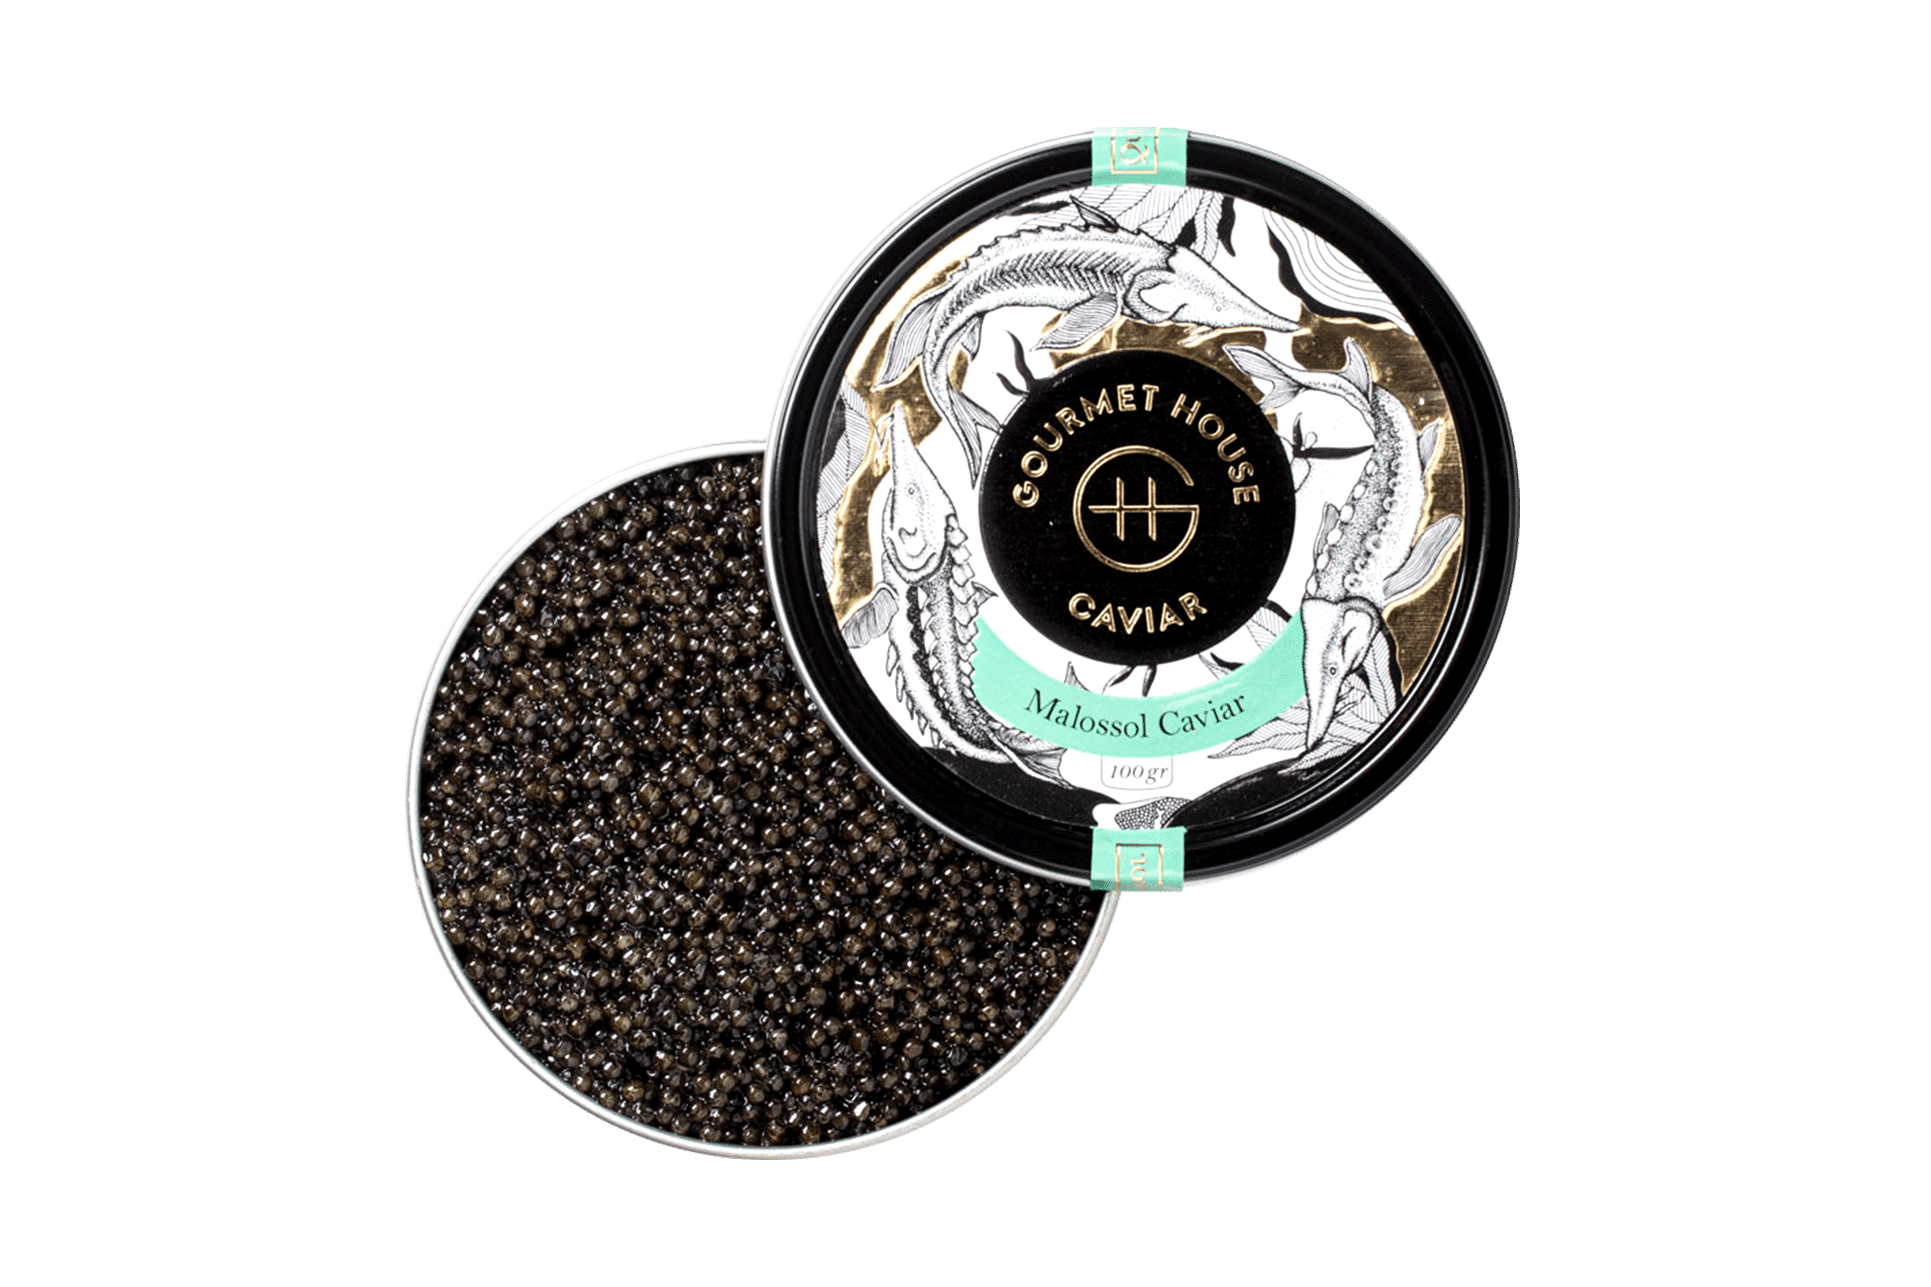 Malossol Caviar